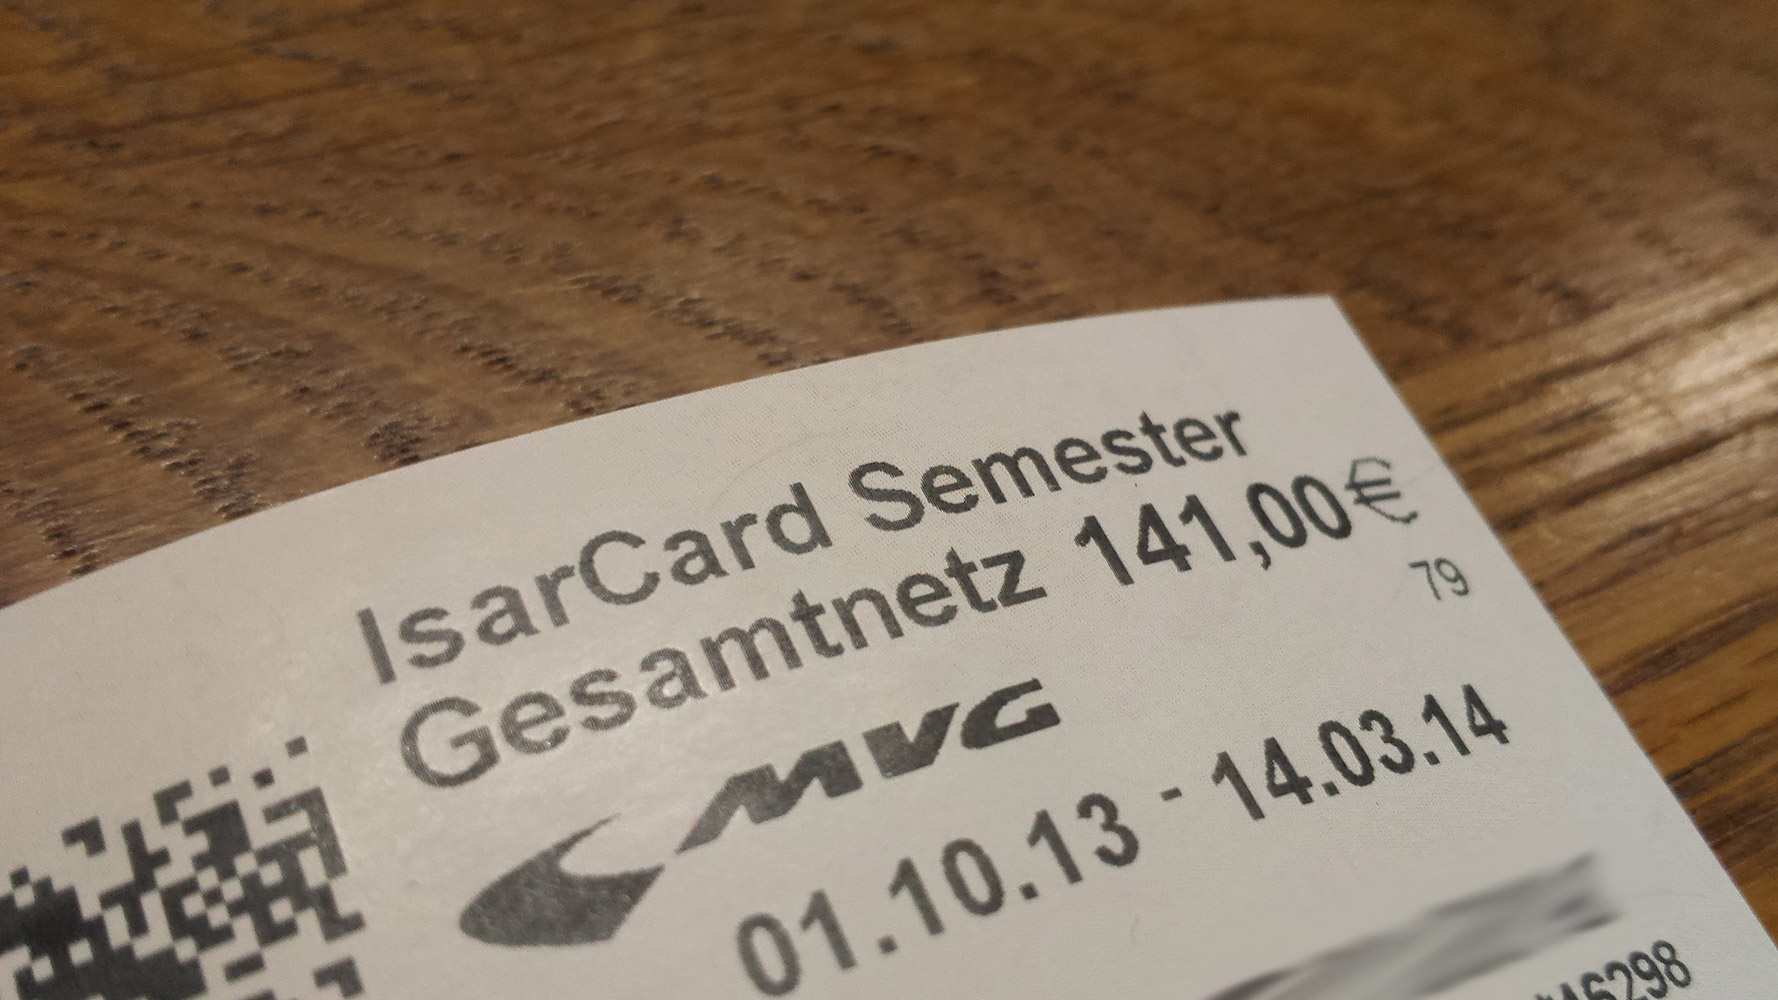 IsarCard Semester - Semesterticket 2013/14